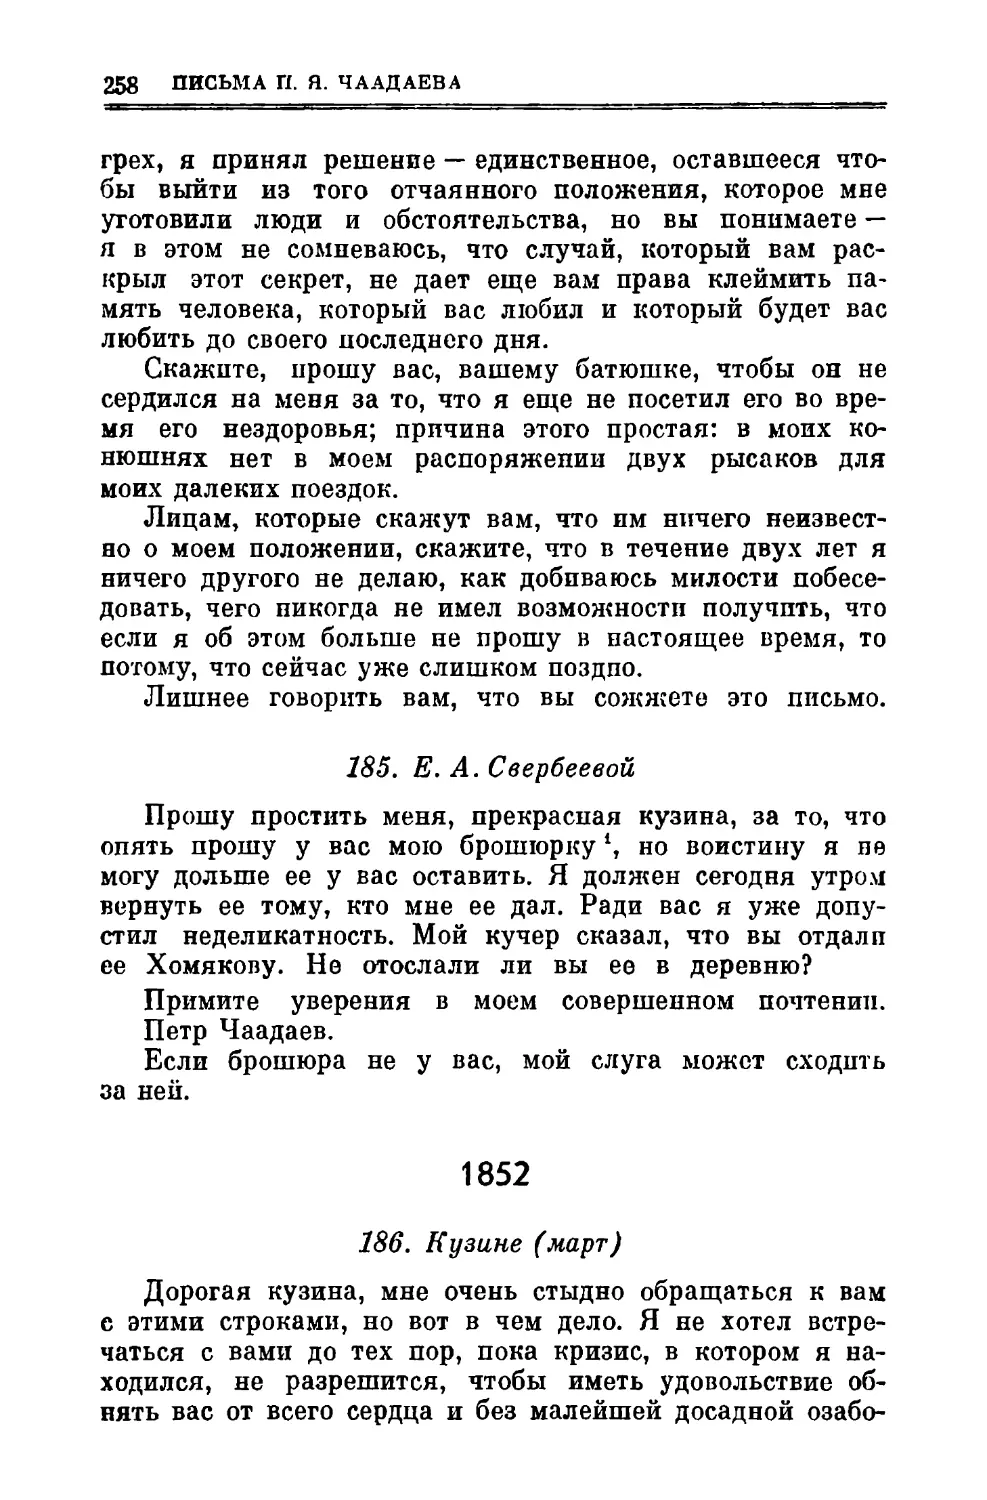 185. Свербеевой Е.А.
1852